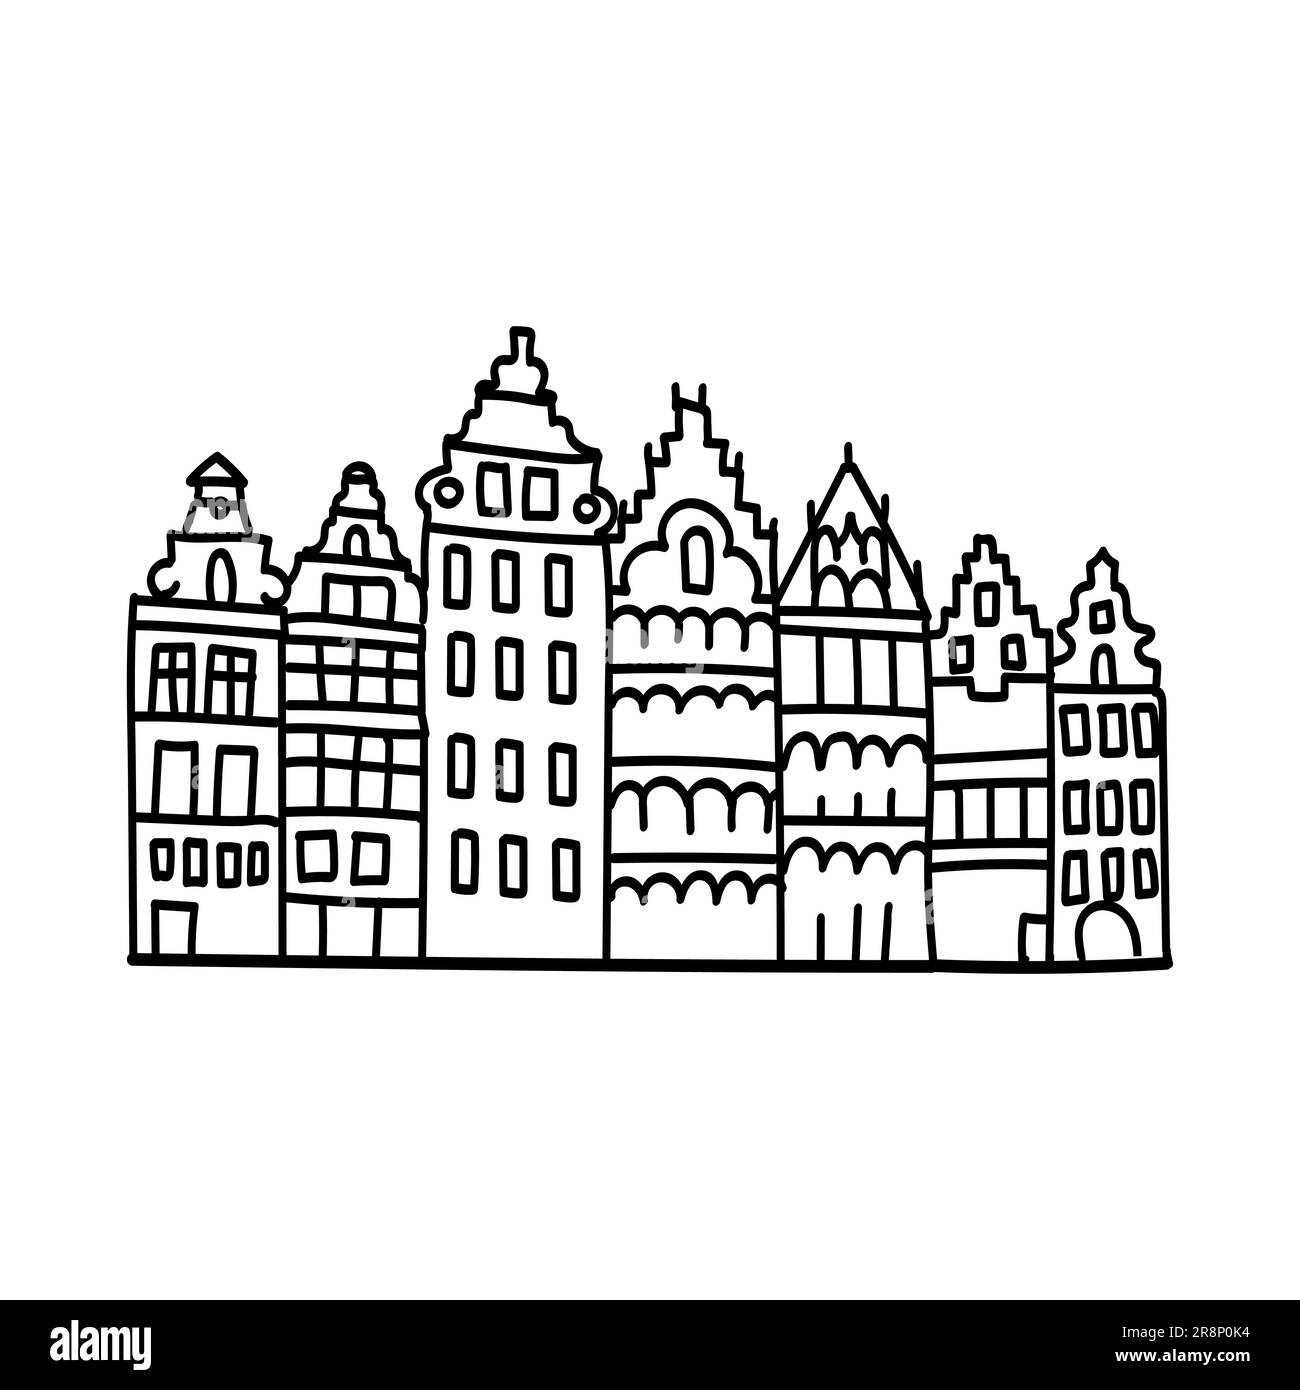 Dessin à la main de l'icône de contour de doodle du bâtiment européen. Sites touristiques des villes d'europe. dessins simples de façades Illustration de Vecteur